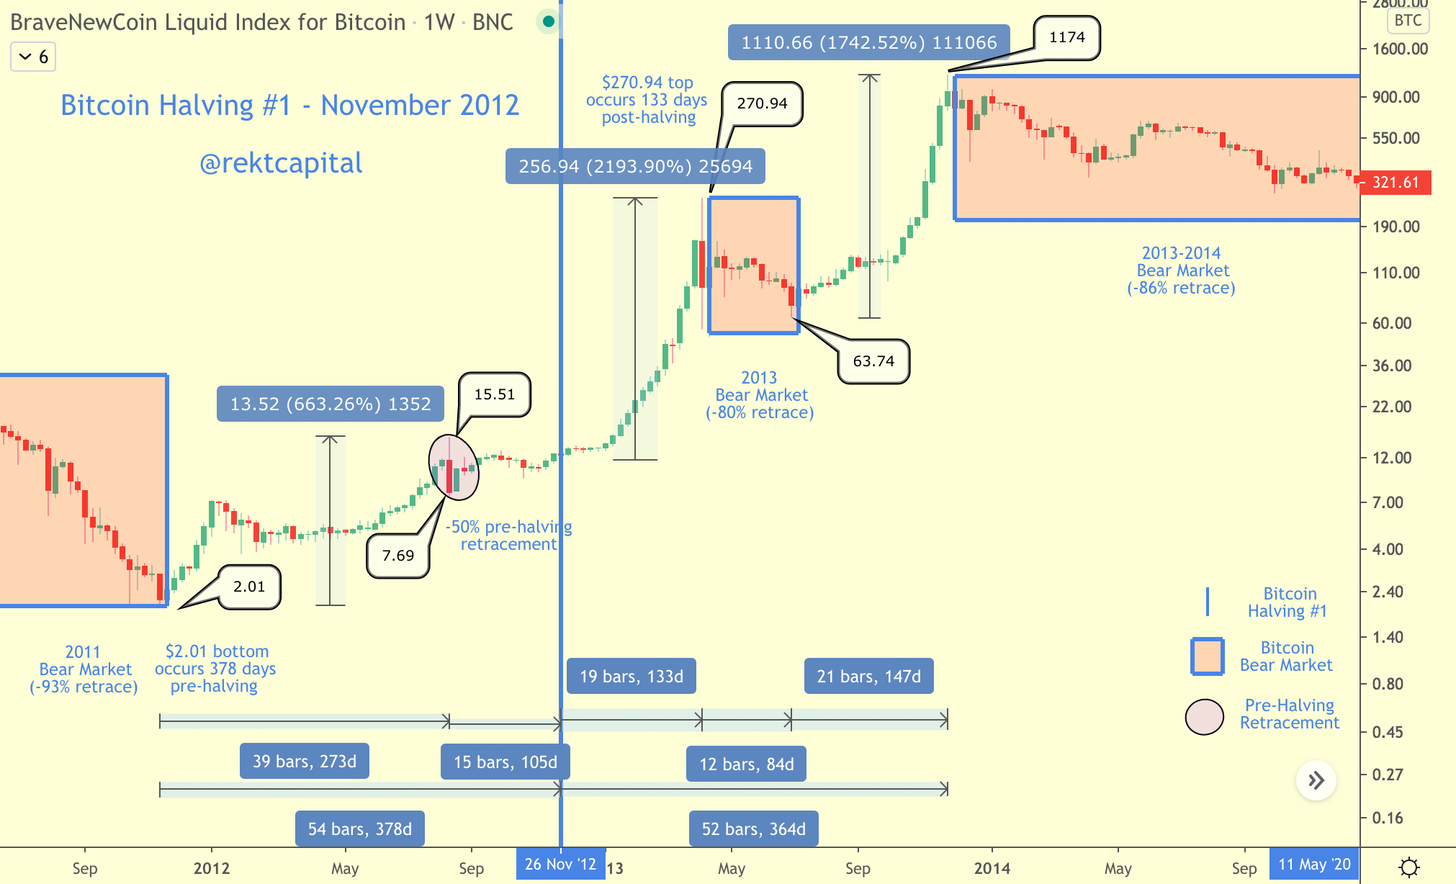 Napló skála Havi Bitcoin árdiagram azt sugallja, hogy a Bear Market emelkedő trend volt